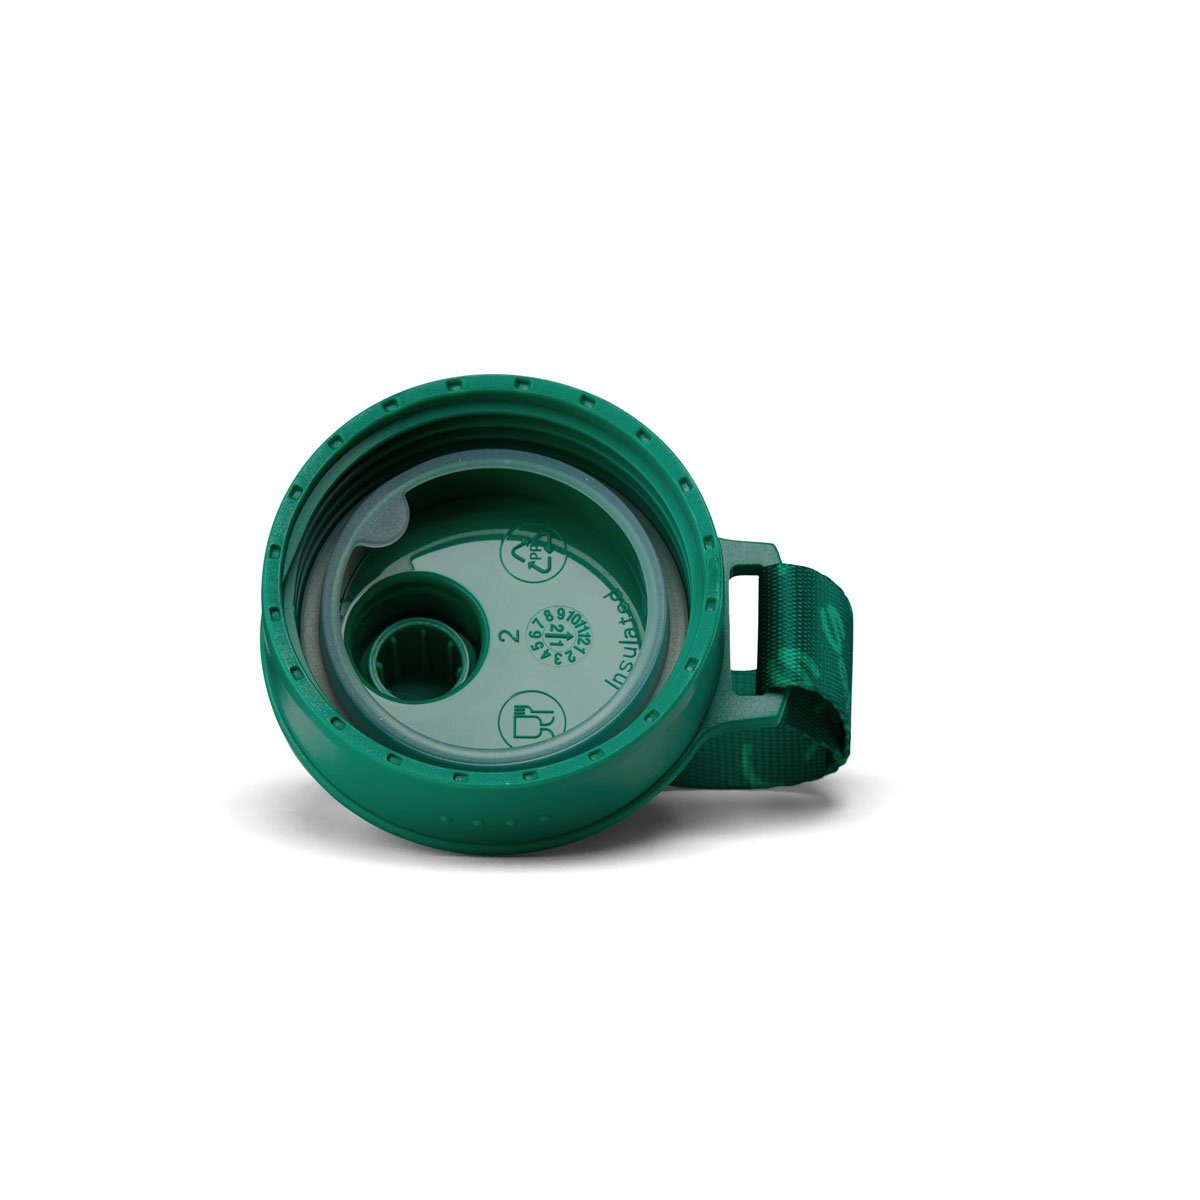 (Tritan) 217 Widerstandsfähiger Sport-Trinkflasche, Satch Trinkflasche Green Kunststoff